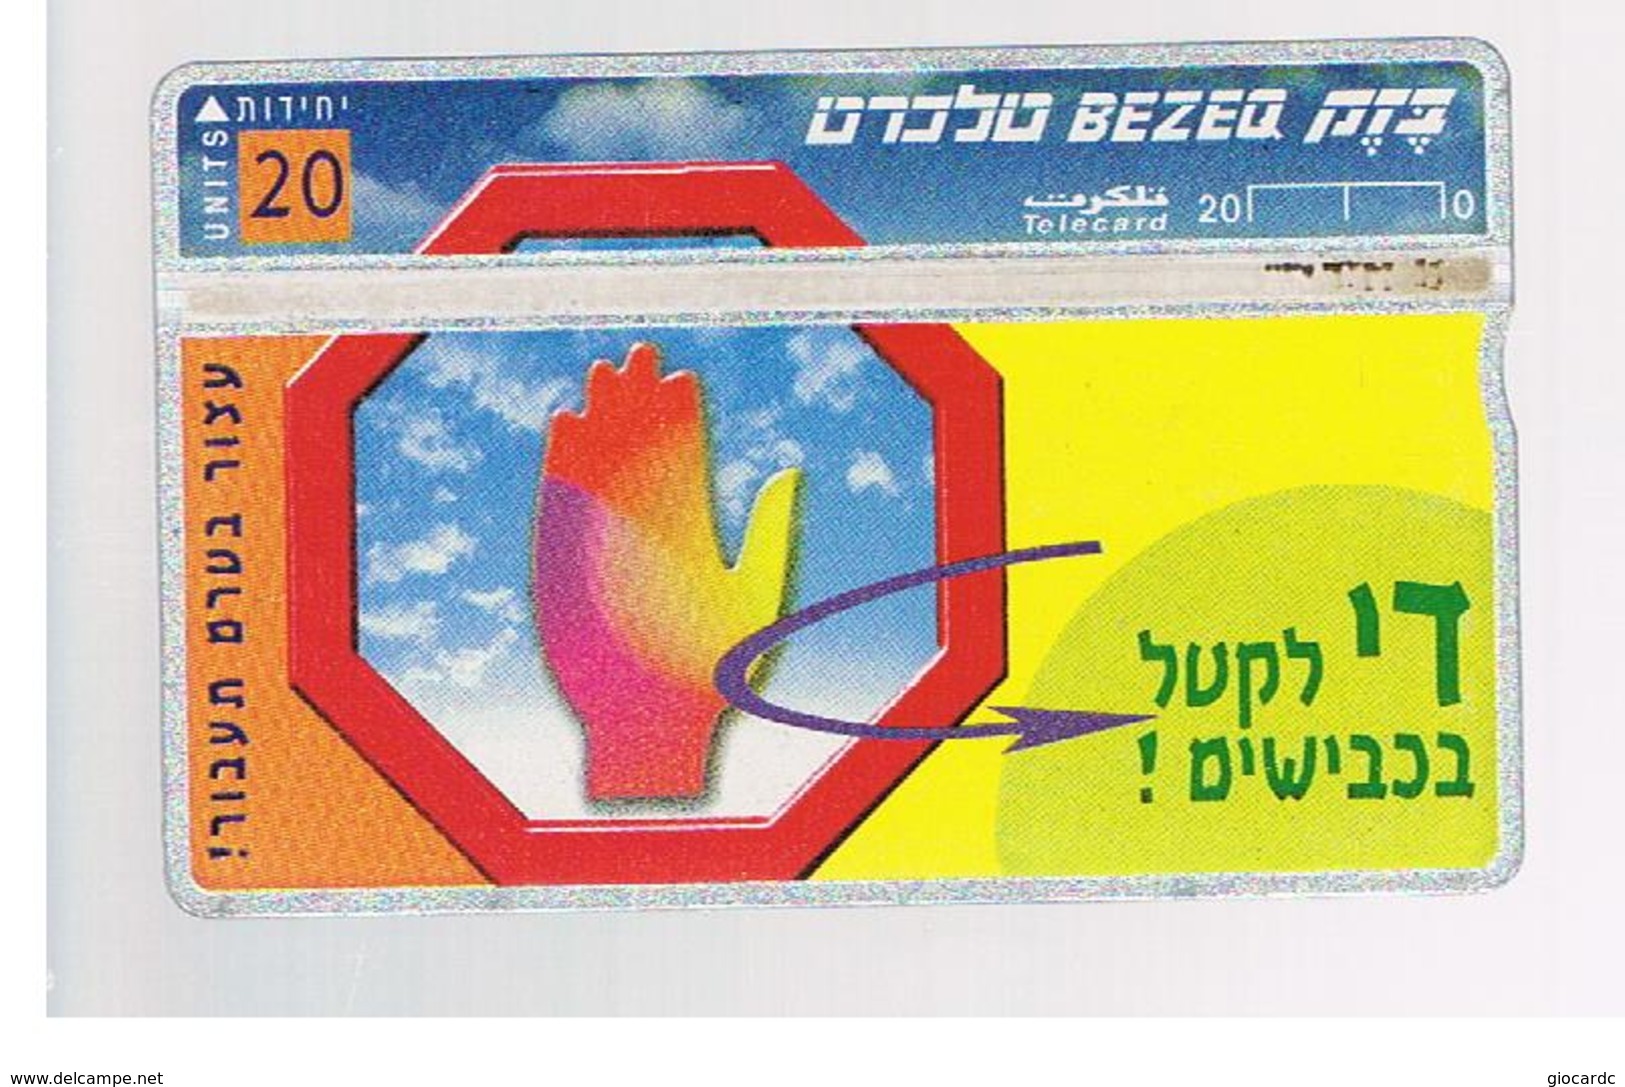 ISRAELE (ISRAEL) -   1998 TRAFFIC LAWS   - USED  -  RIF. 10878 - Israele